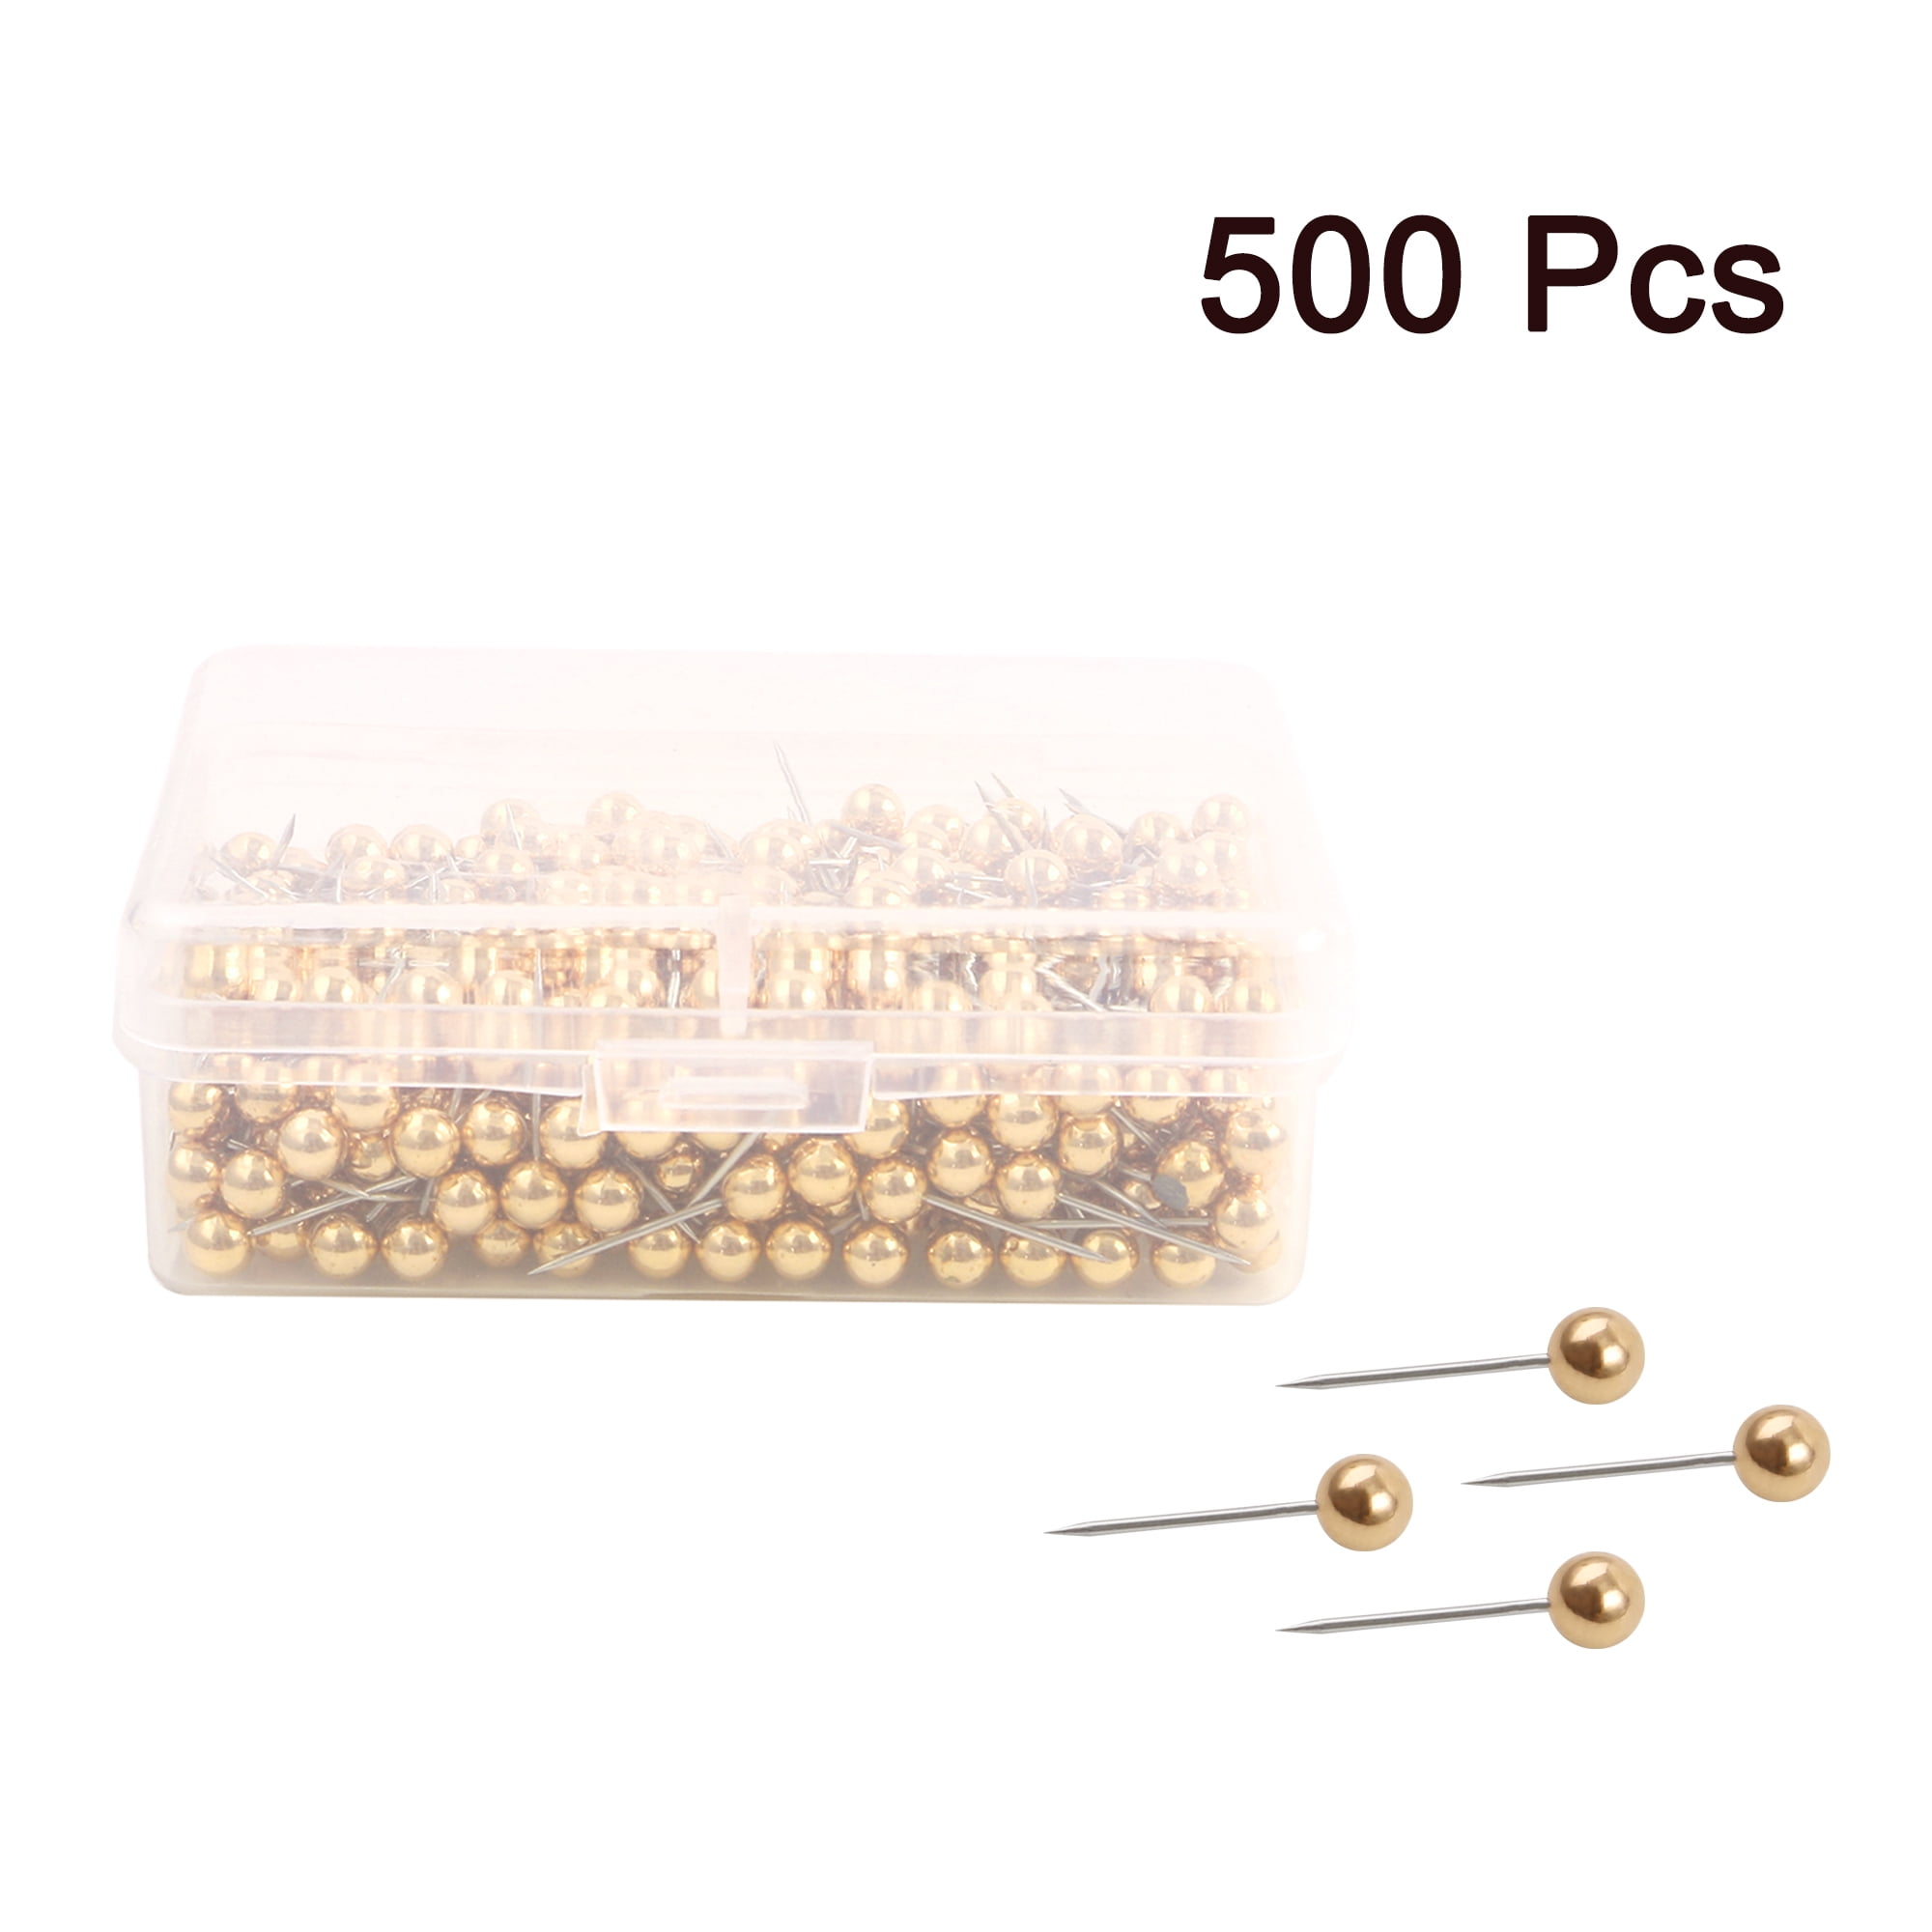 500 Pcs Gold Push Pins Set, Gold Thumb Tacks 6 Style Binder Clips